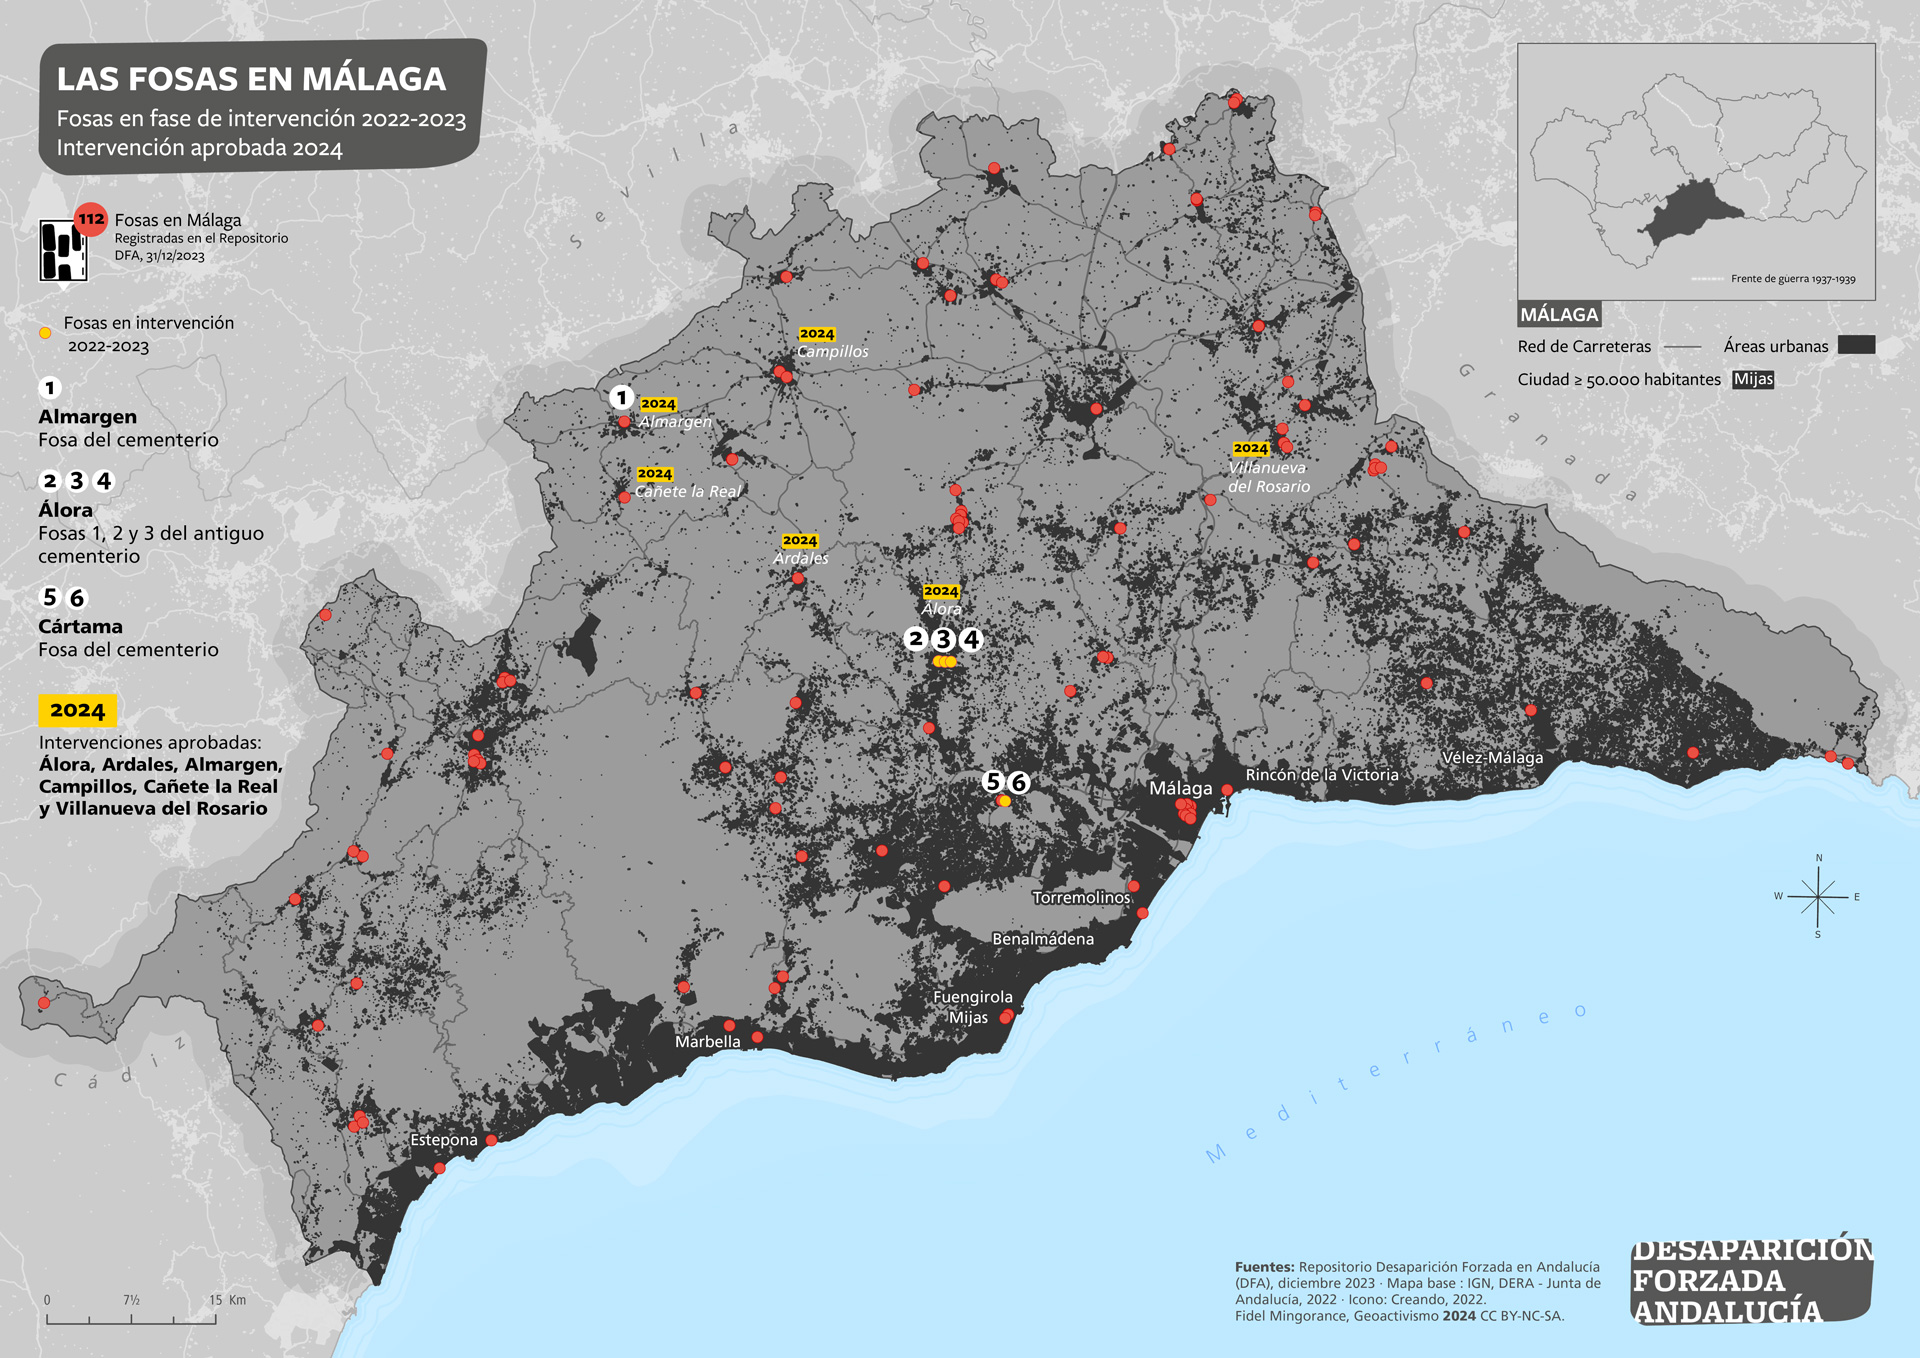 Las fosas en Málaga.  Fosas en fase de intervención en 2022-2023. Intervenciones aprobadas 2024